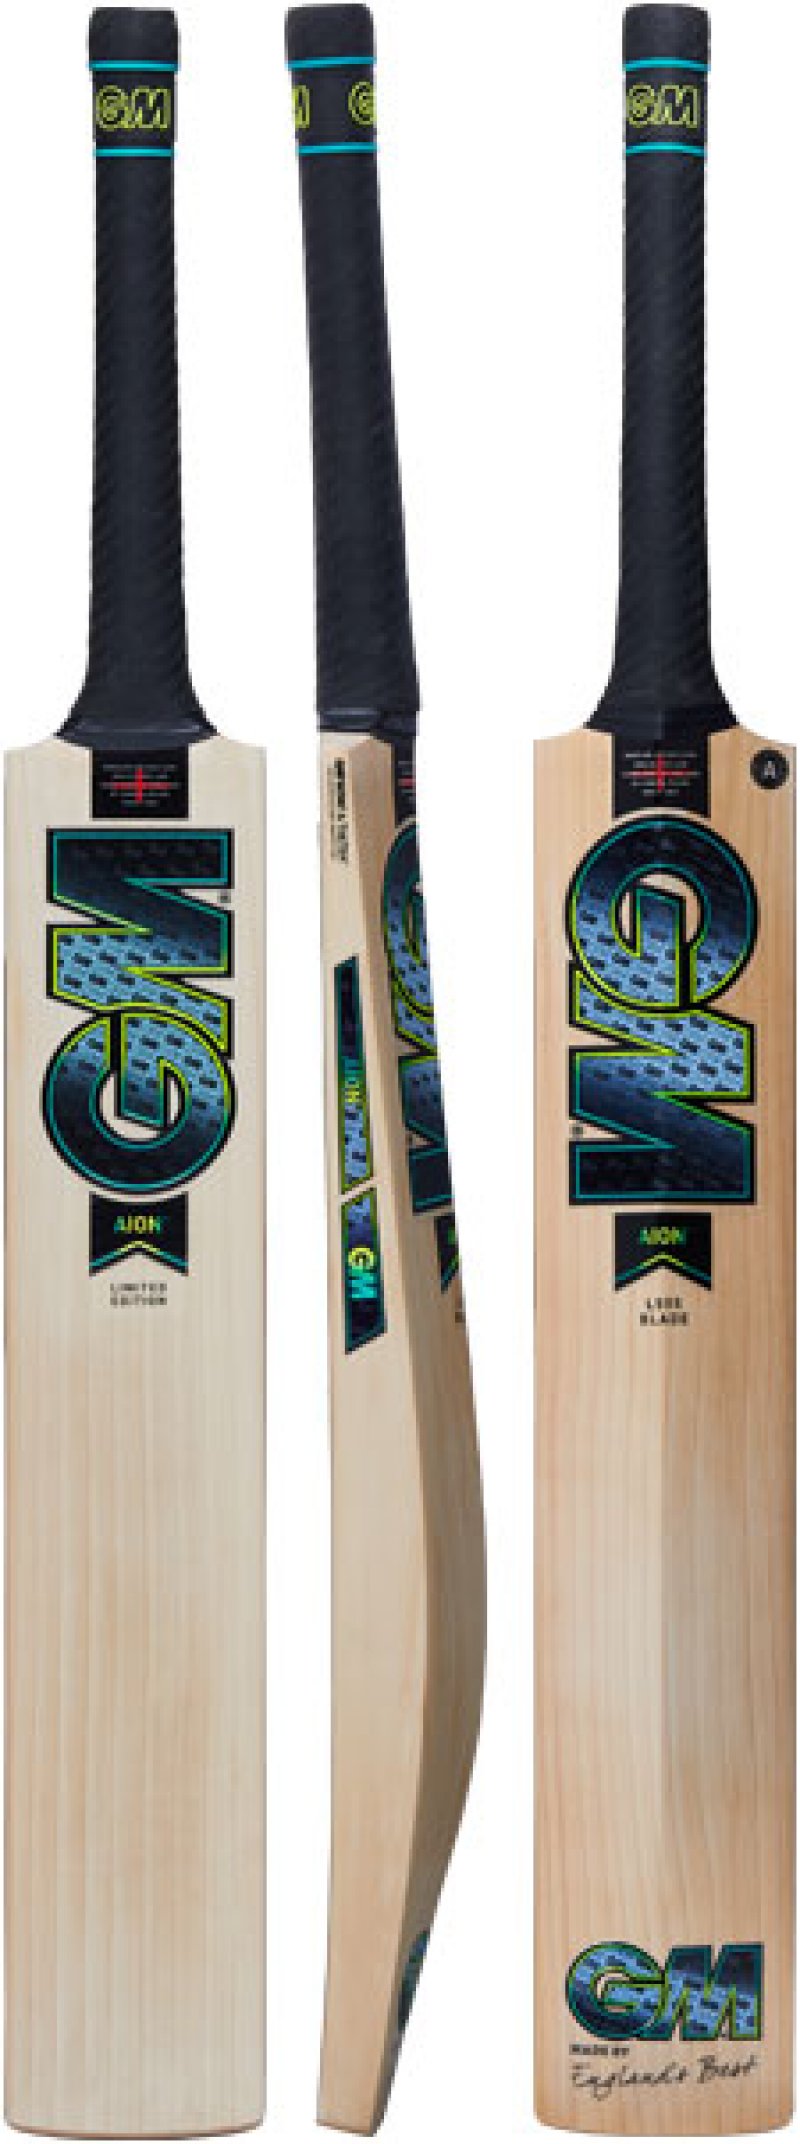 Gunn and Moore Aion L555 DXM 808 Cricket Bat